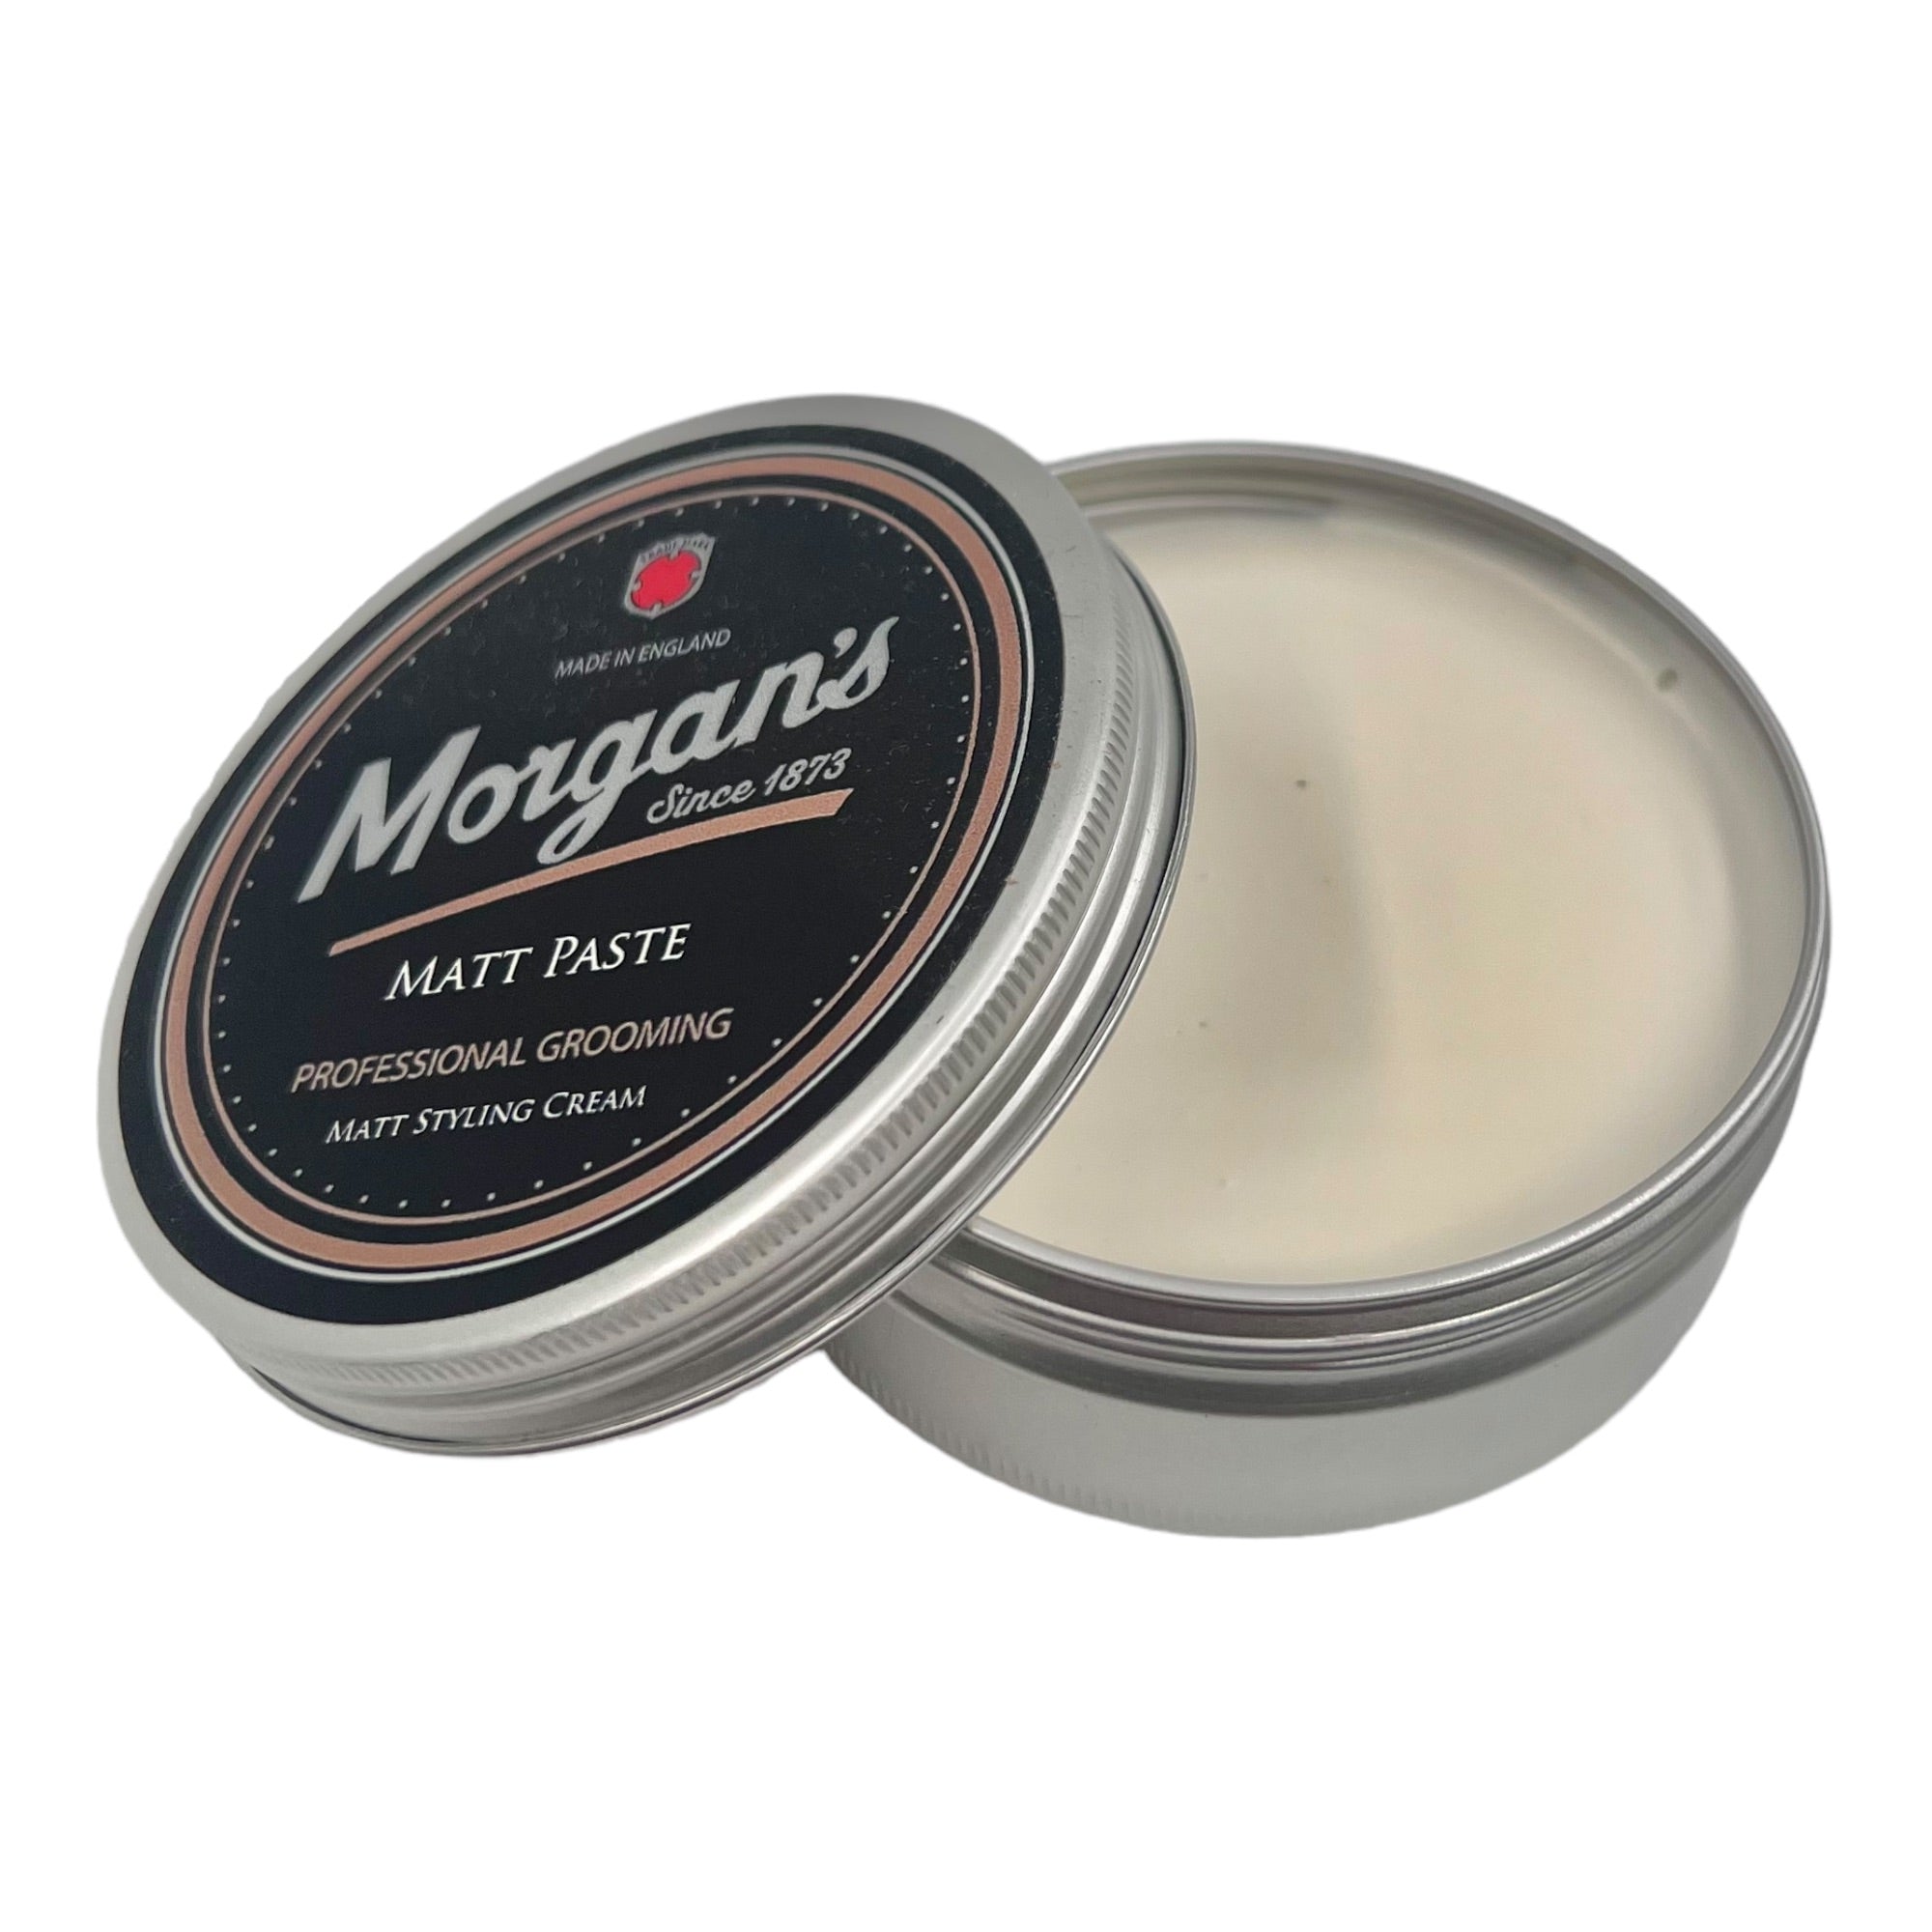 Morgan's - Matt Paste Matt Styling Cream 75ml